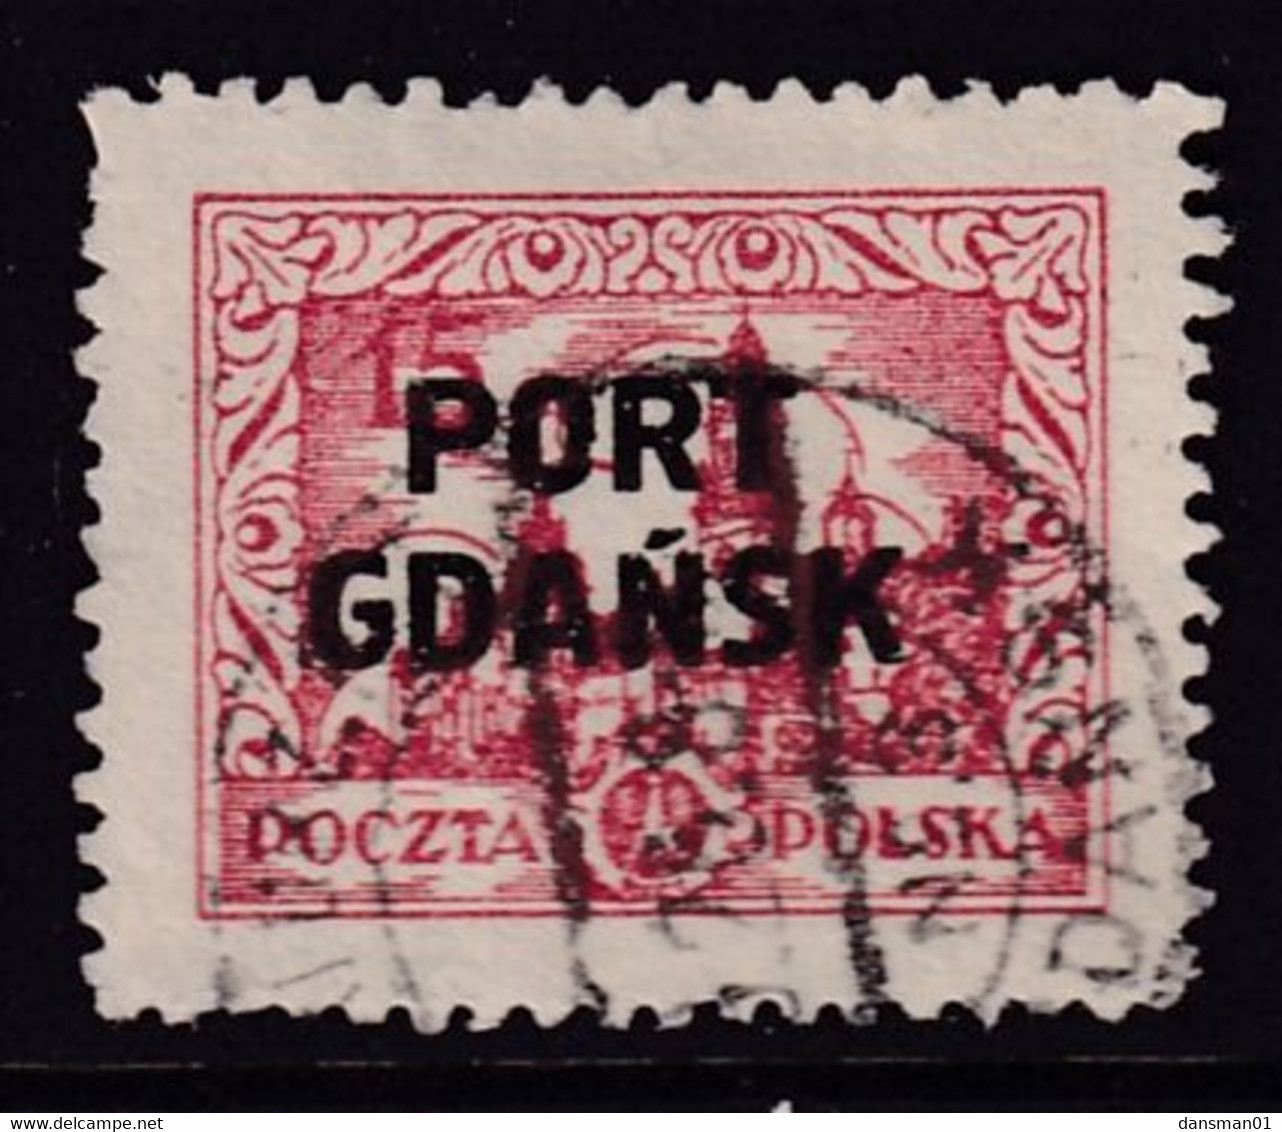 Port Gdansk 1926 Fi 14a Used Type I - Besatzungszeit